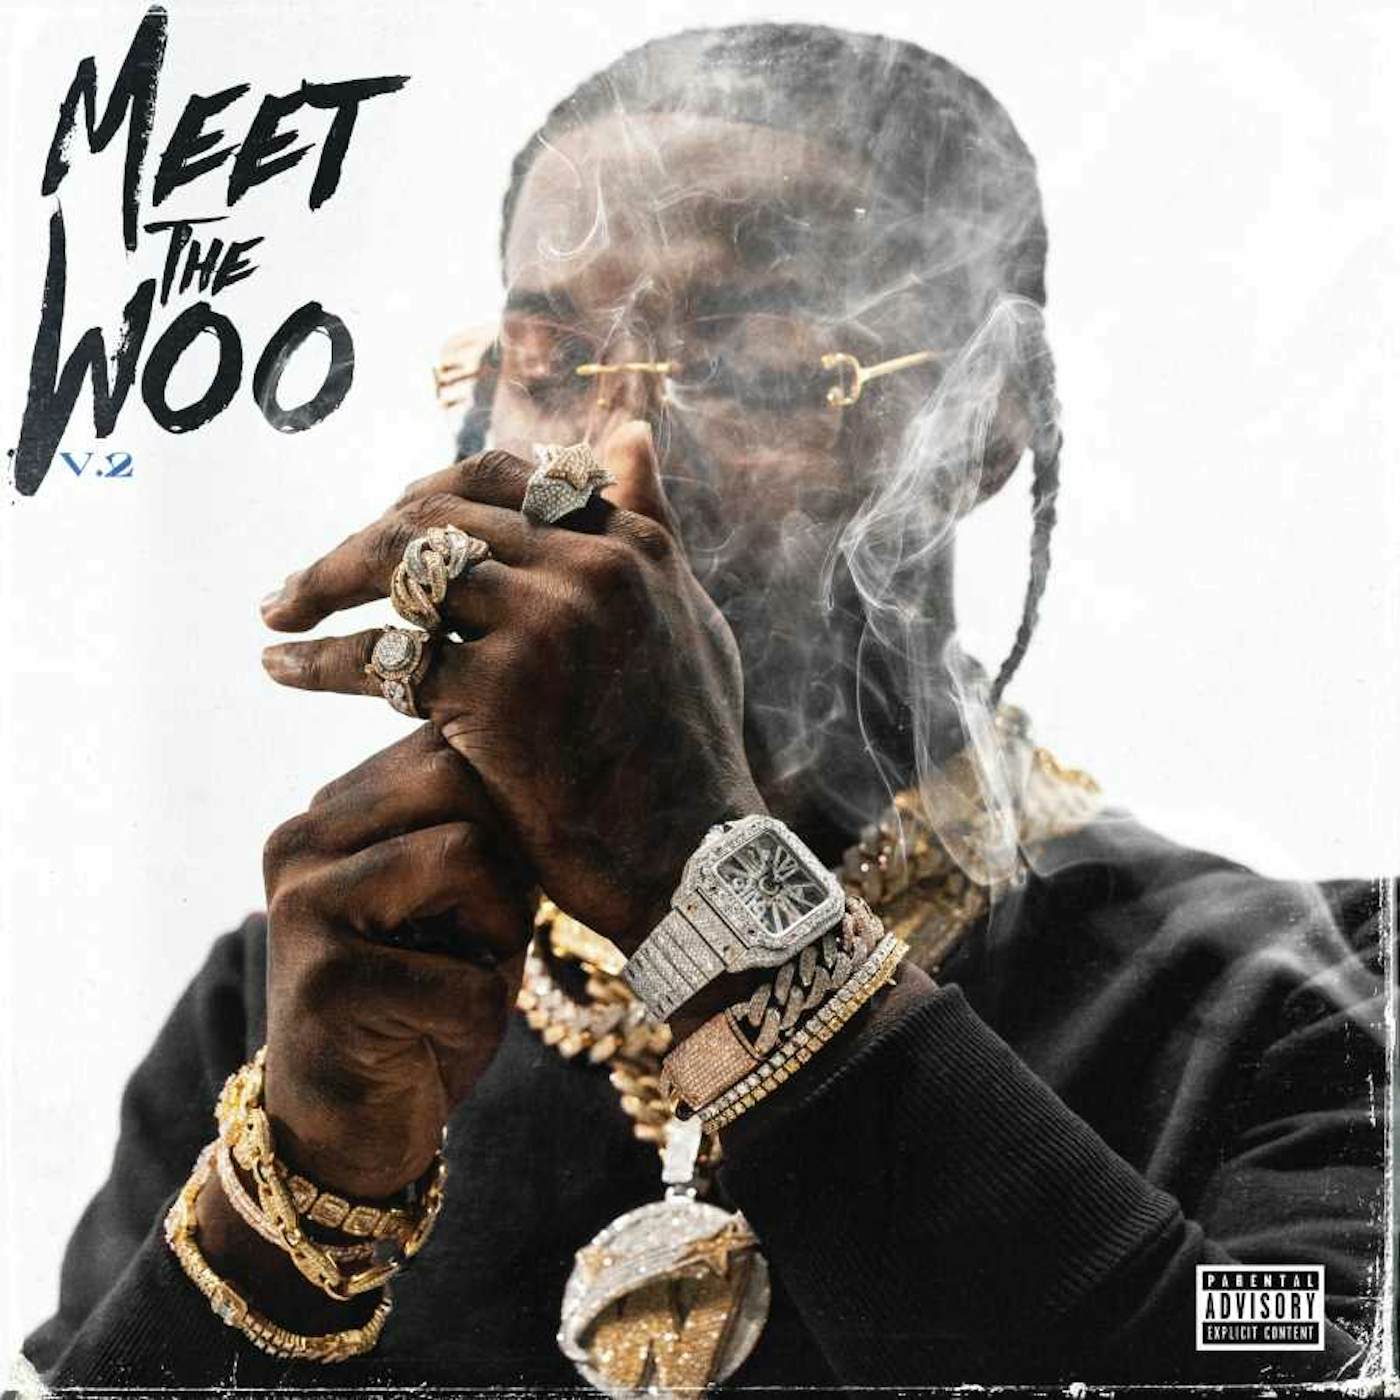 Pop Smoke MEET THE WOO 2 (X) CD